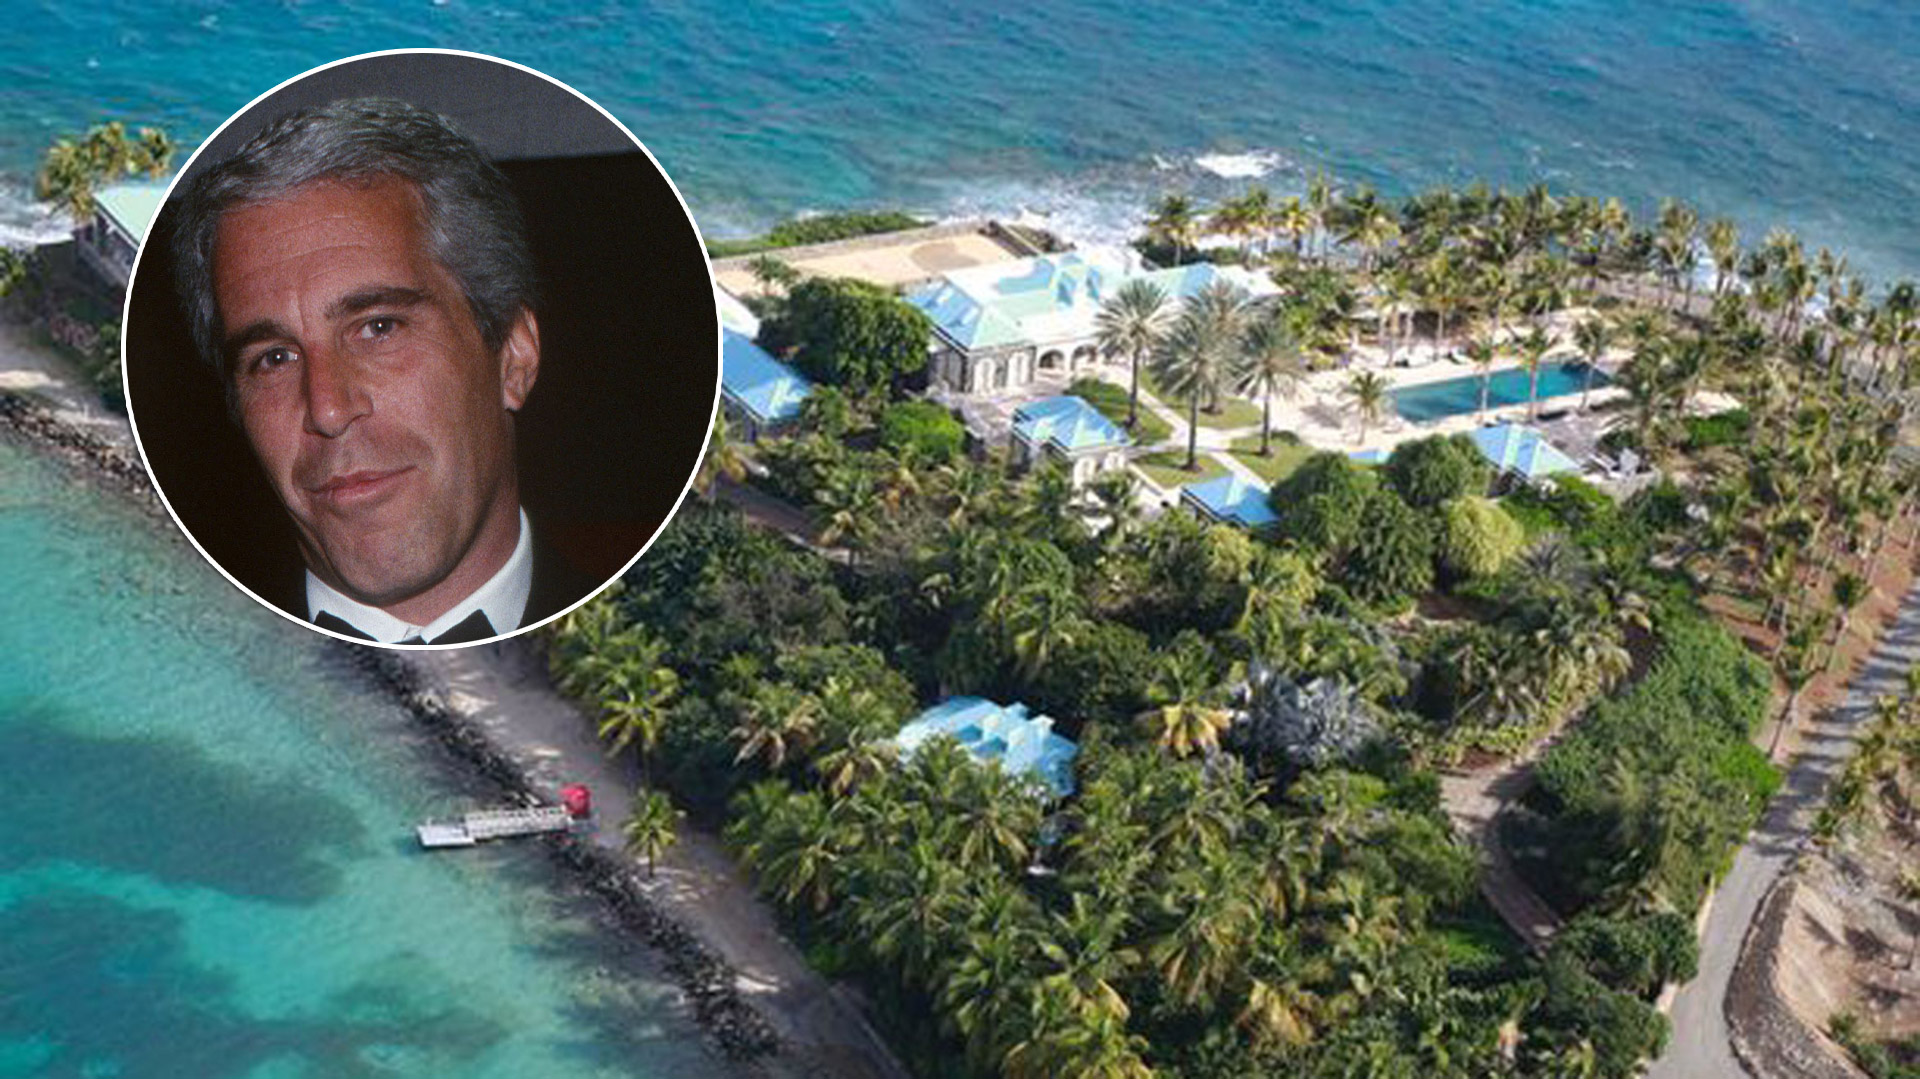 La isla de Paedo era una propiedad exclusiva del magnate pedófilo Jeffrey Epstein donde solía llevar a jóvenes para hacerlas sus esclavas sexuales. 